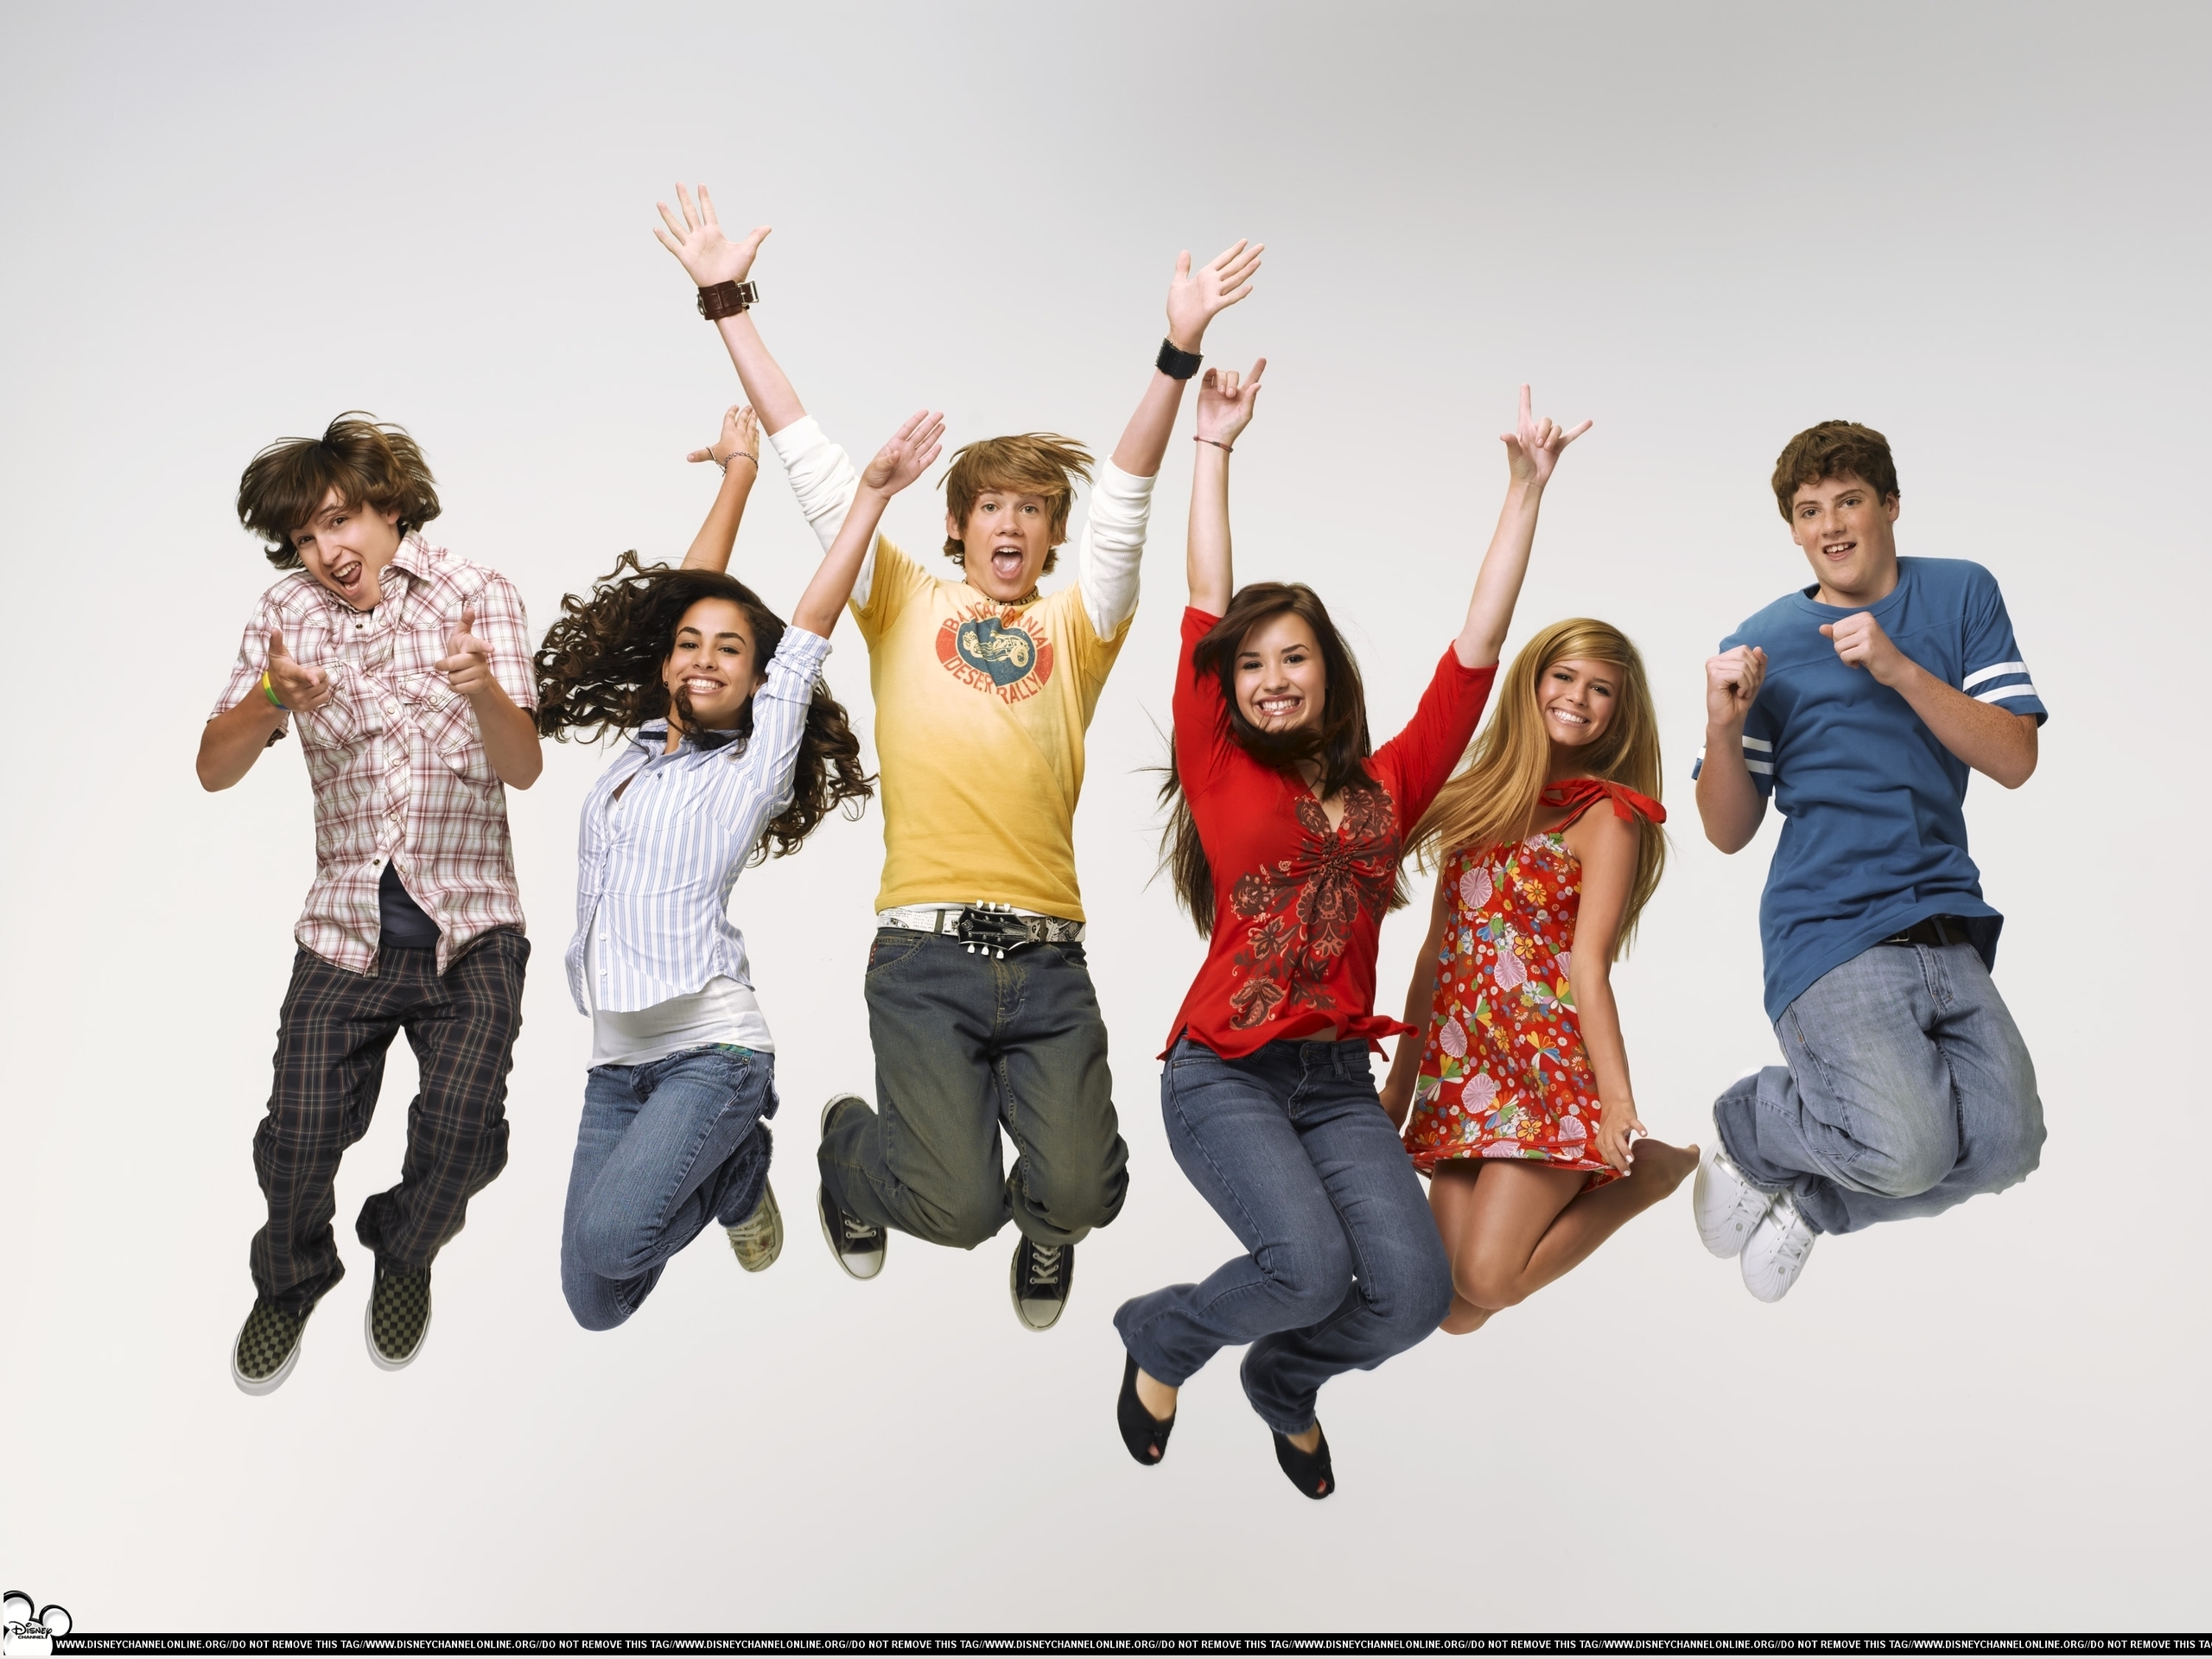 As the Bell Rings Season 1 Promos - Disney Channel Photo (2208648) - Fanpop